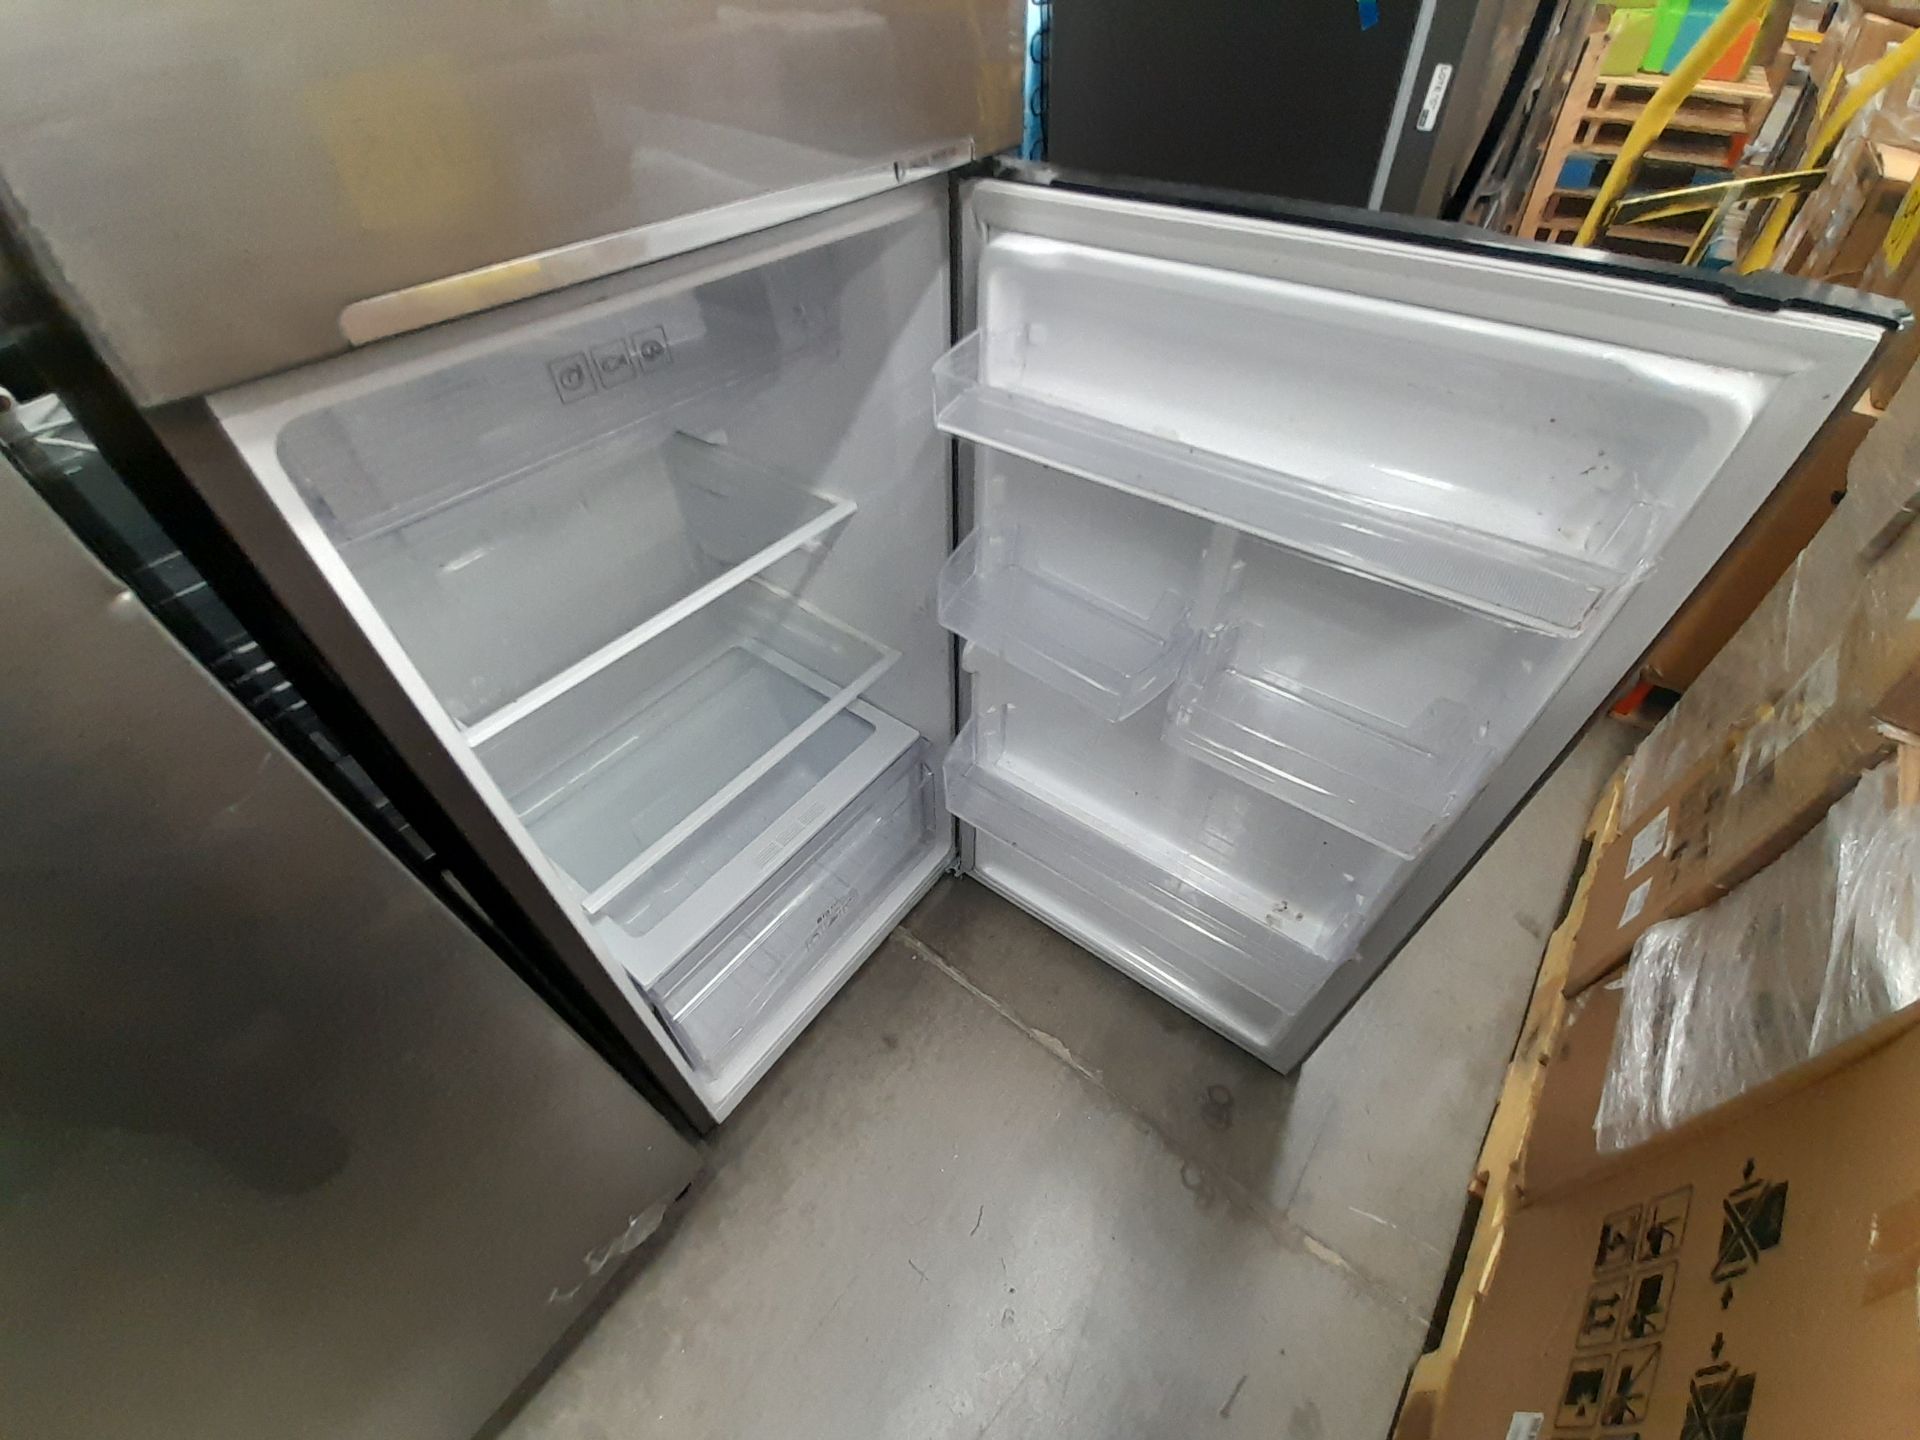 Lote de 2 refrigeradores contiene: 1 refrigerador Marca SAMSUNG, Modelo RT29A500JS8, Serie 03920W, - Image 7 of 8